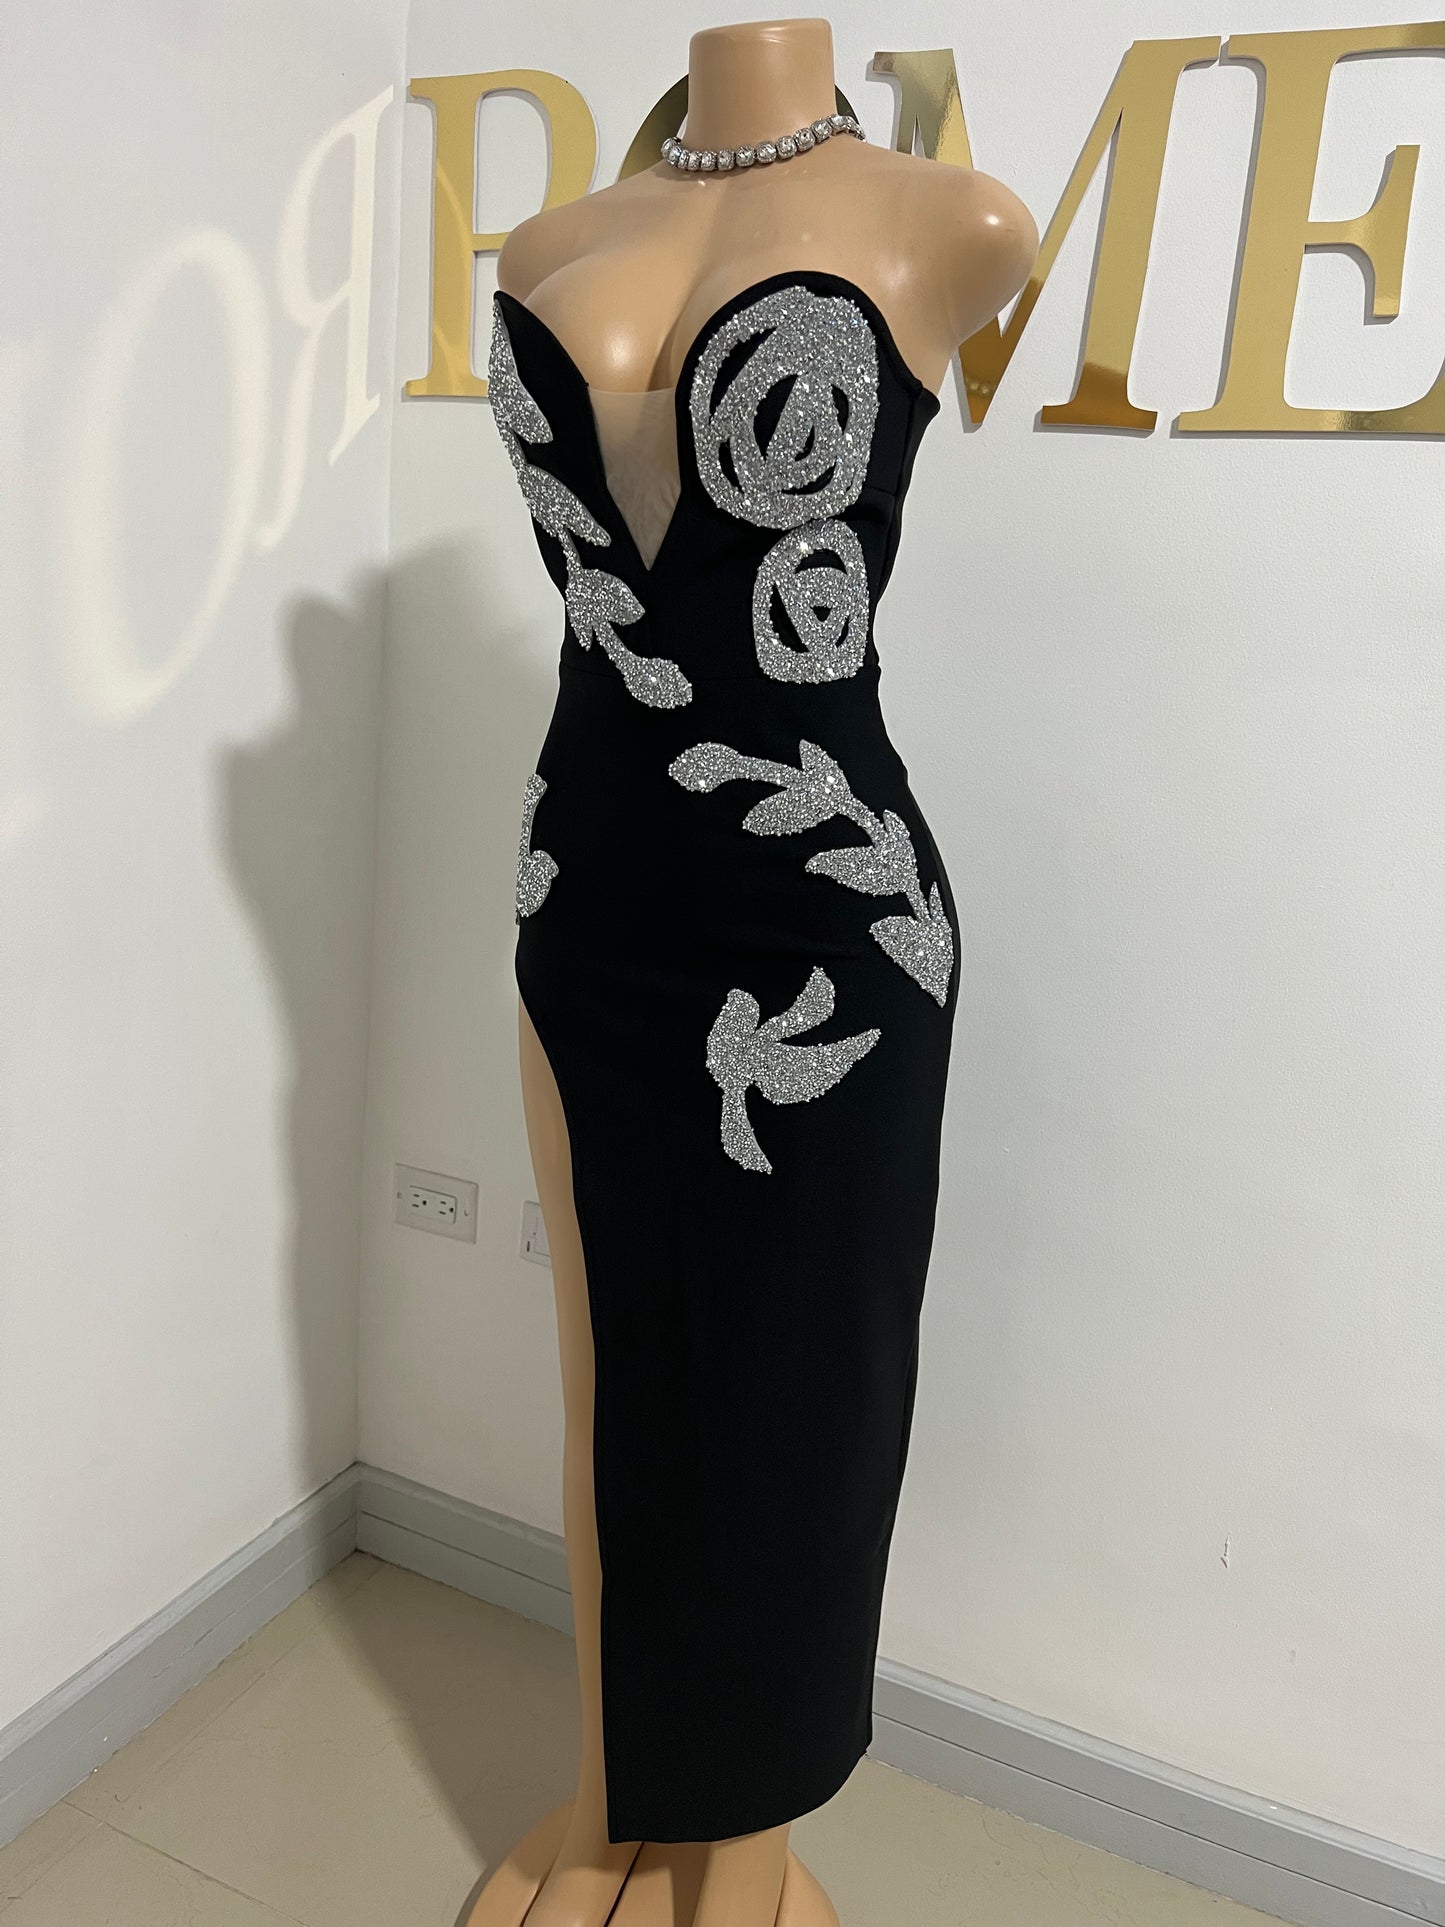 Octavia Glam Bandage Dress (Black)